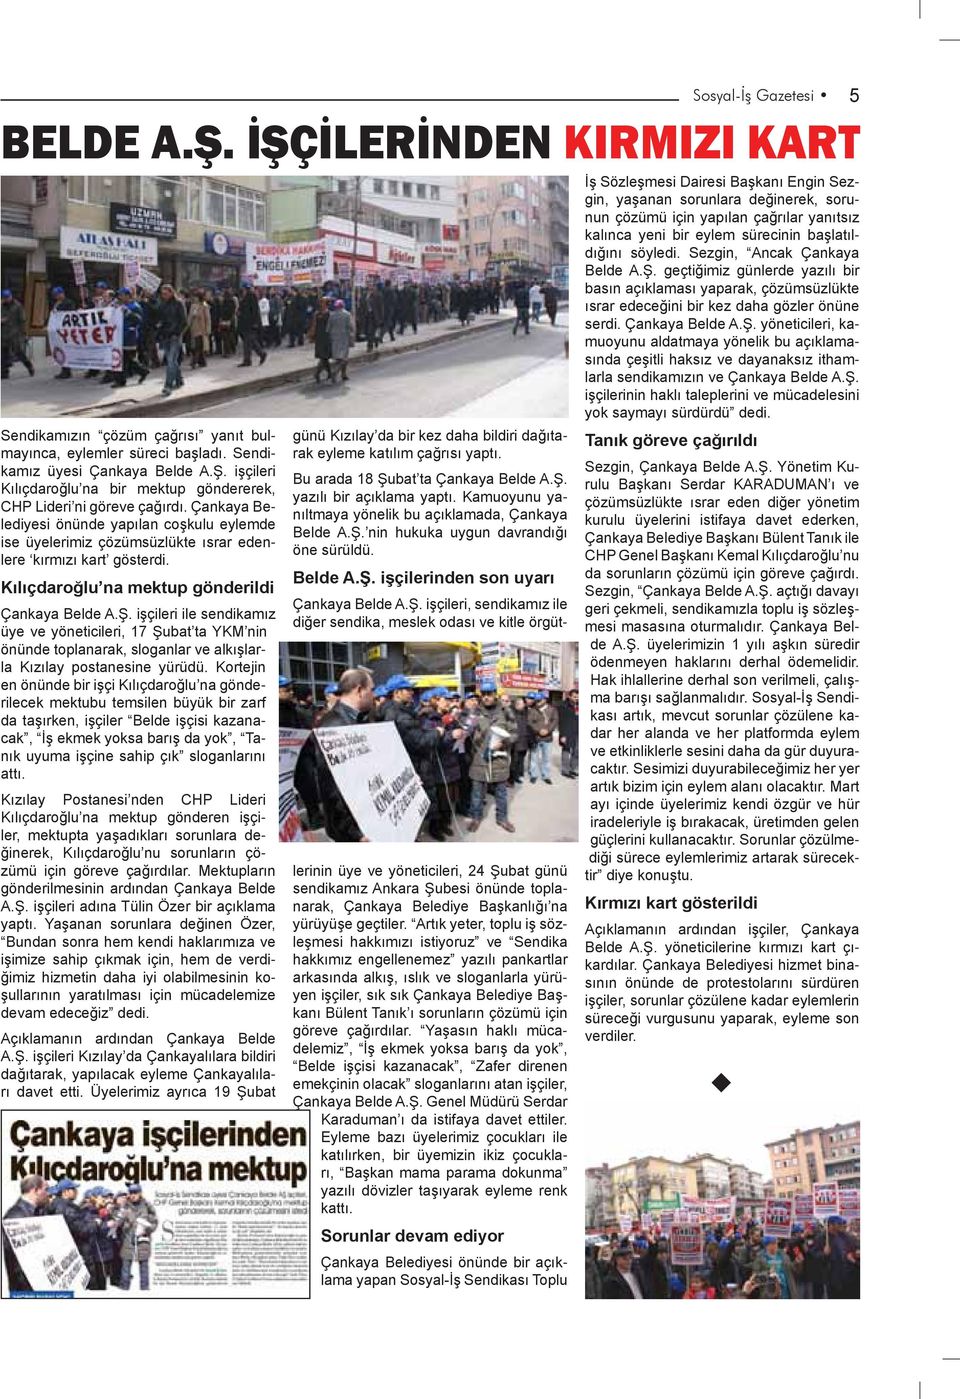 işçileri ile sendikamız üye ve yöneticileri, 17 Şubat ta YKM nin önünde toplanarak, sloganlar ve alkışlarla Kızılay postanesine yürüdü.